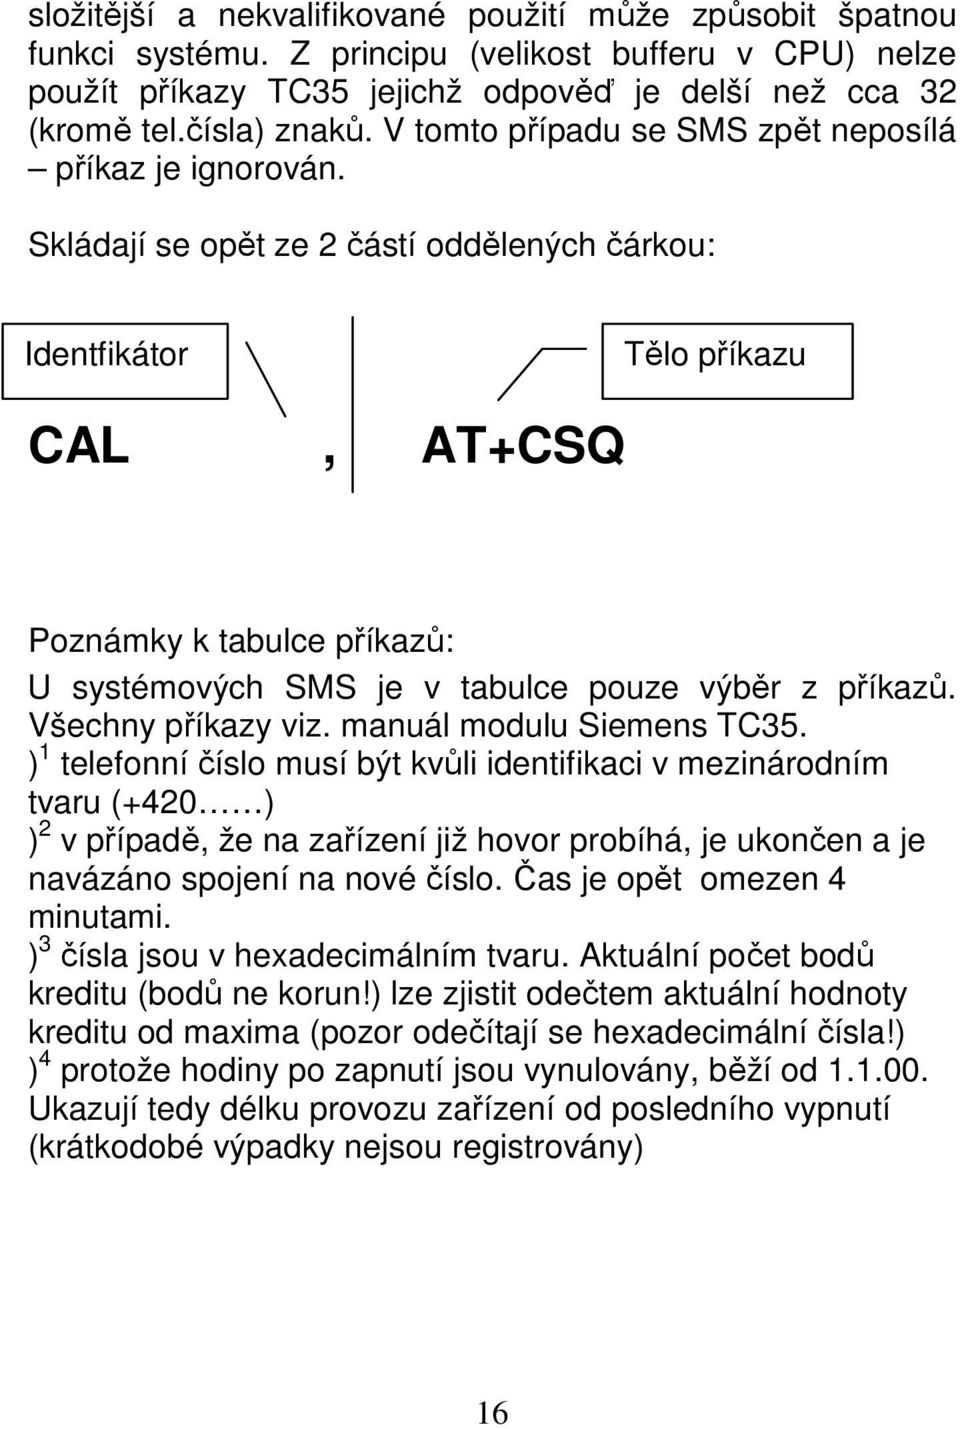 Skládají se opět ze 2 částí oddělených čárkou: Identfikátor Tělo příkazu CAL, AT+CSQ Poznámky k tabulce příkazů: U systémových SMS je v tabulce pouze výběr z příkazů. Všechny příkazy viz.